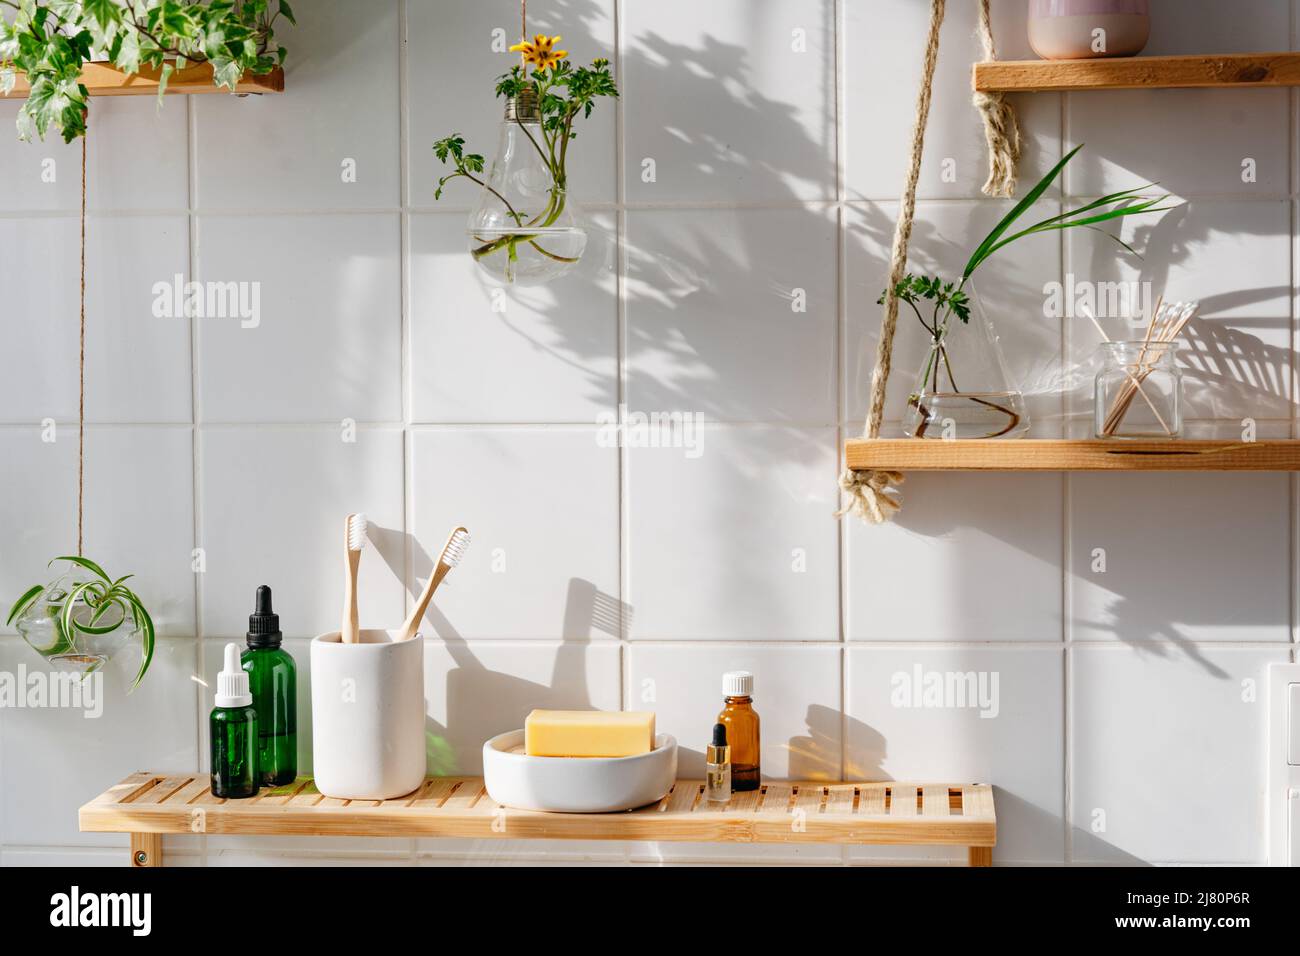 Étagères en bois avec cosmétiques et articles de toilette contre un mur de carreaux blancs au design biophile. Pots en verre suspendus avec plantes vertes Banque D'Images